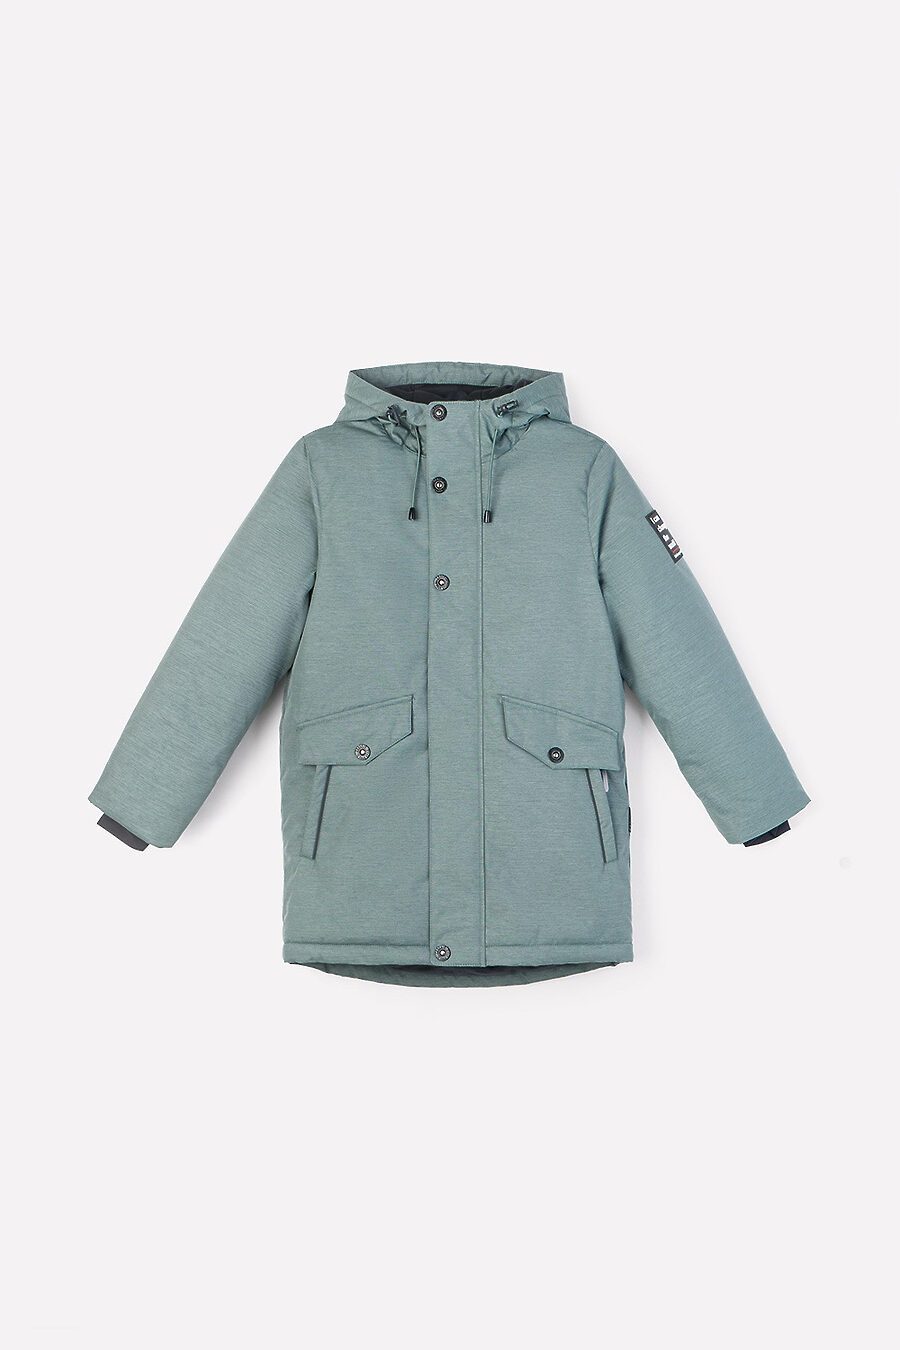 Куртка для мальчиков CUBBY 796418 купить оптом от производителя. Совместная покупка детской одежды в OptMoyo